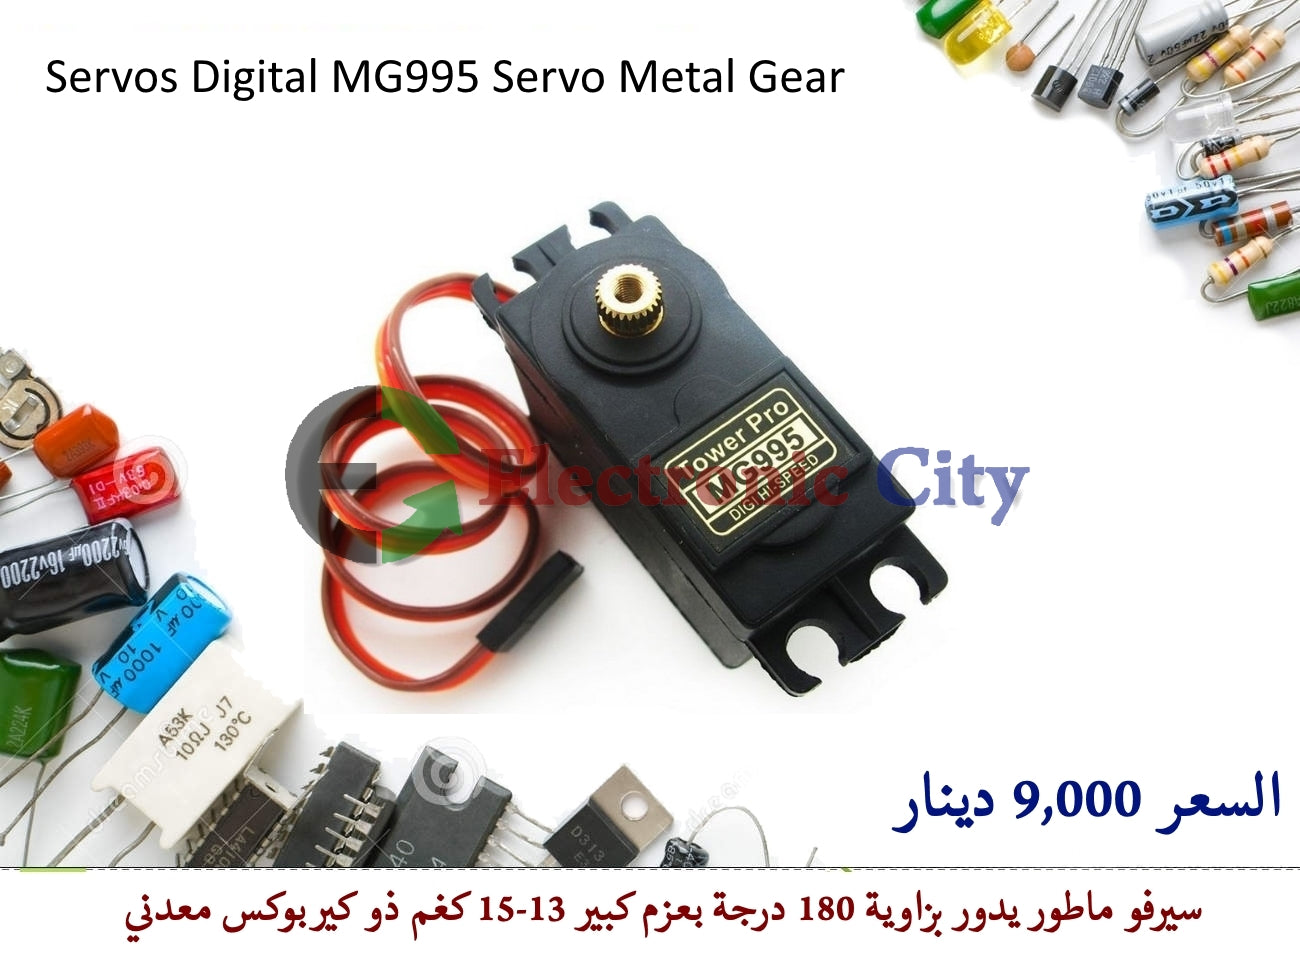 Servos Digital MG995 Servo Metal Gear 180 #S4 60003